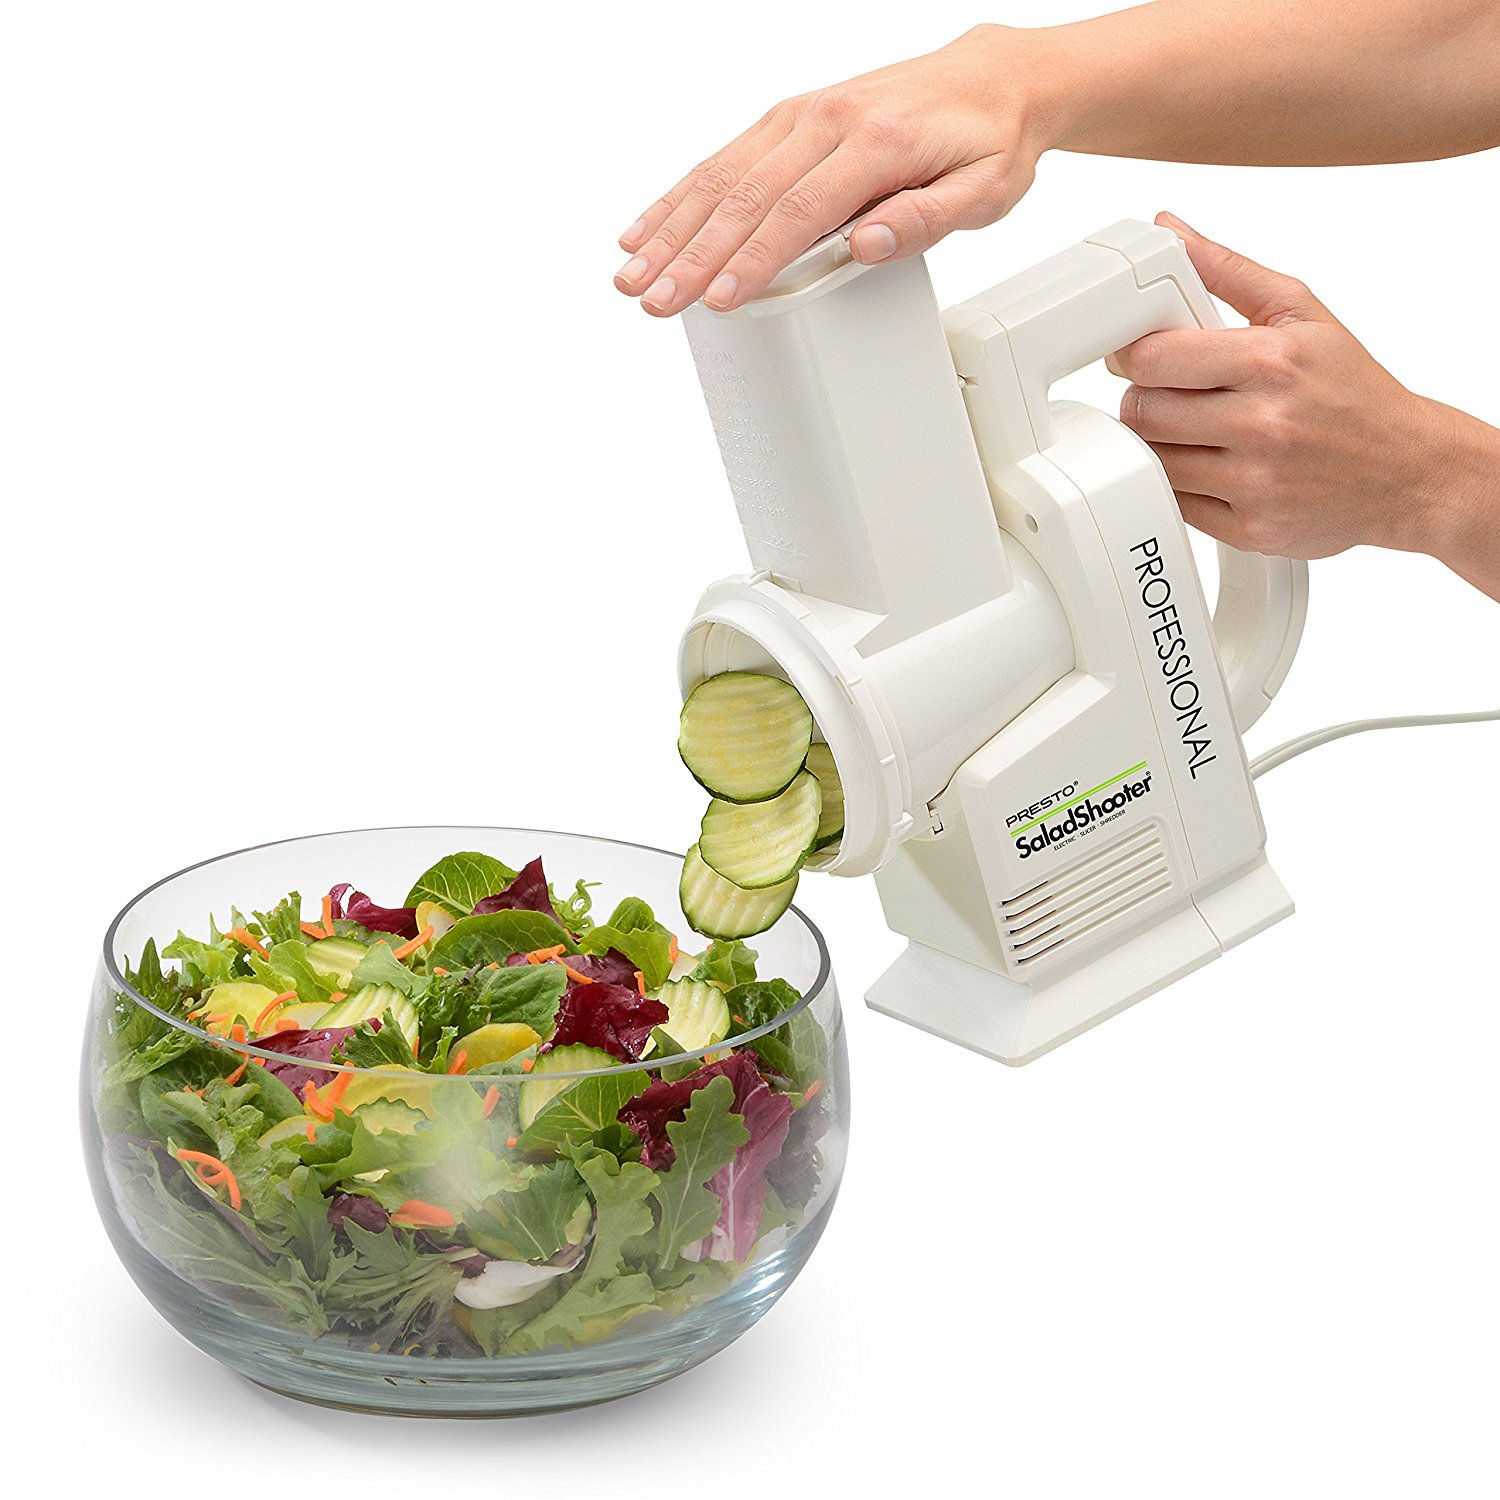 Presto Professional SaladShooter Electric Slicer/Shredder – Just $47.92!